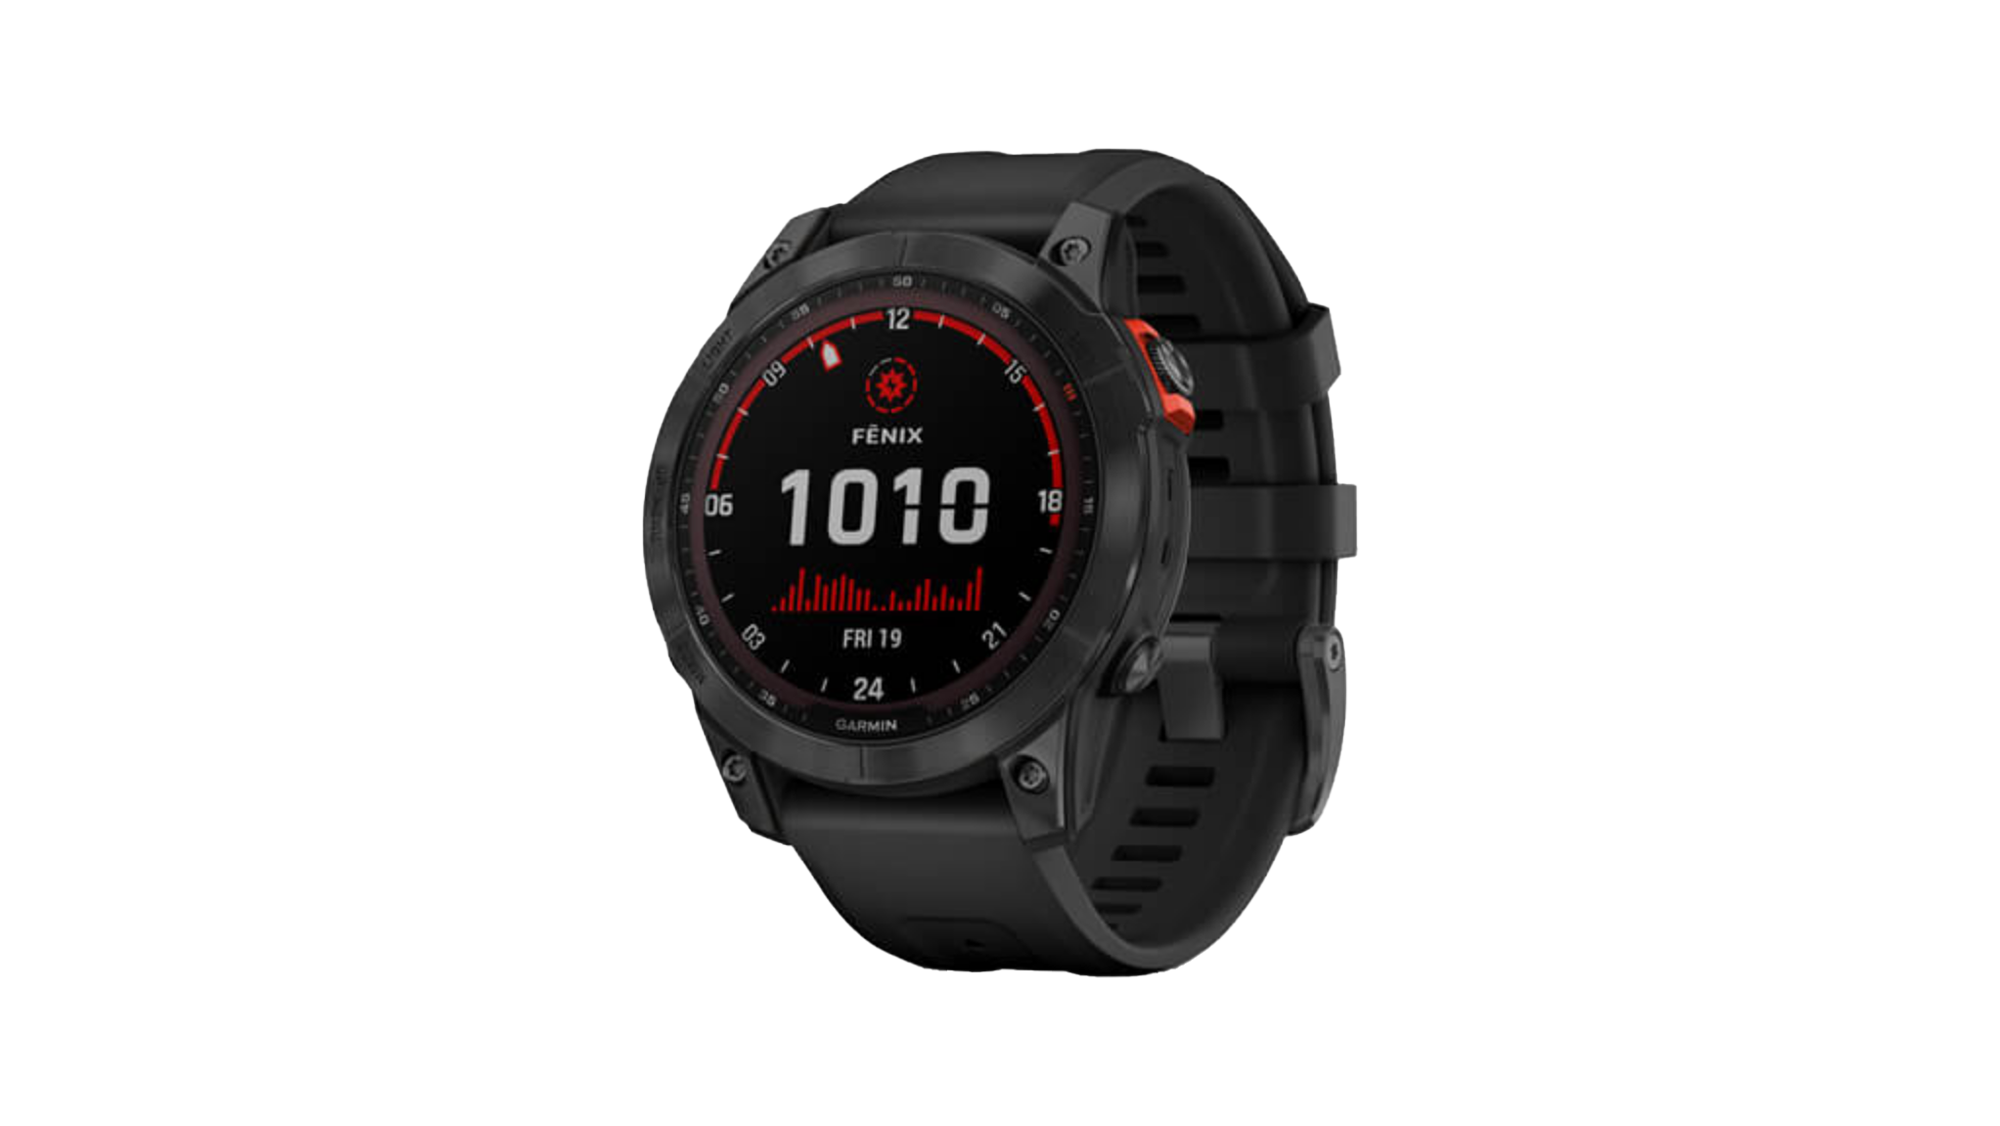 Garmin Fenix 7 Smartwatch